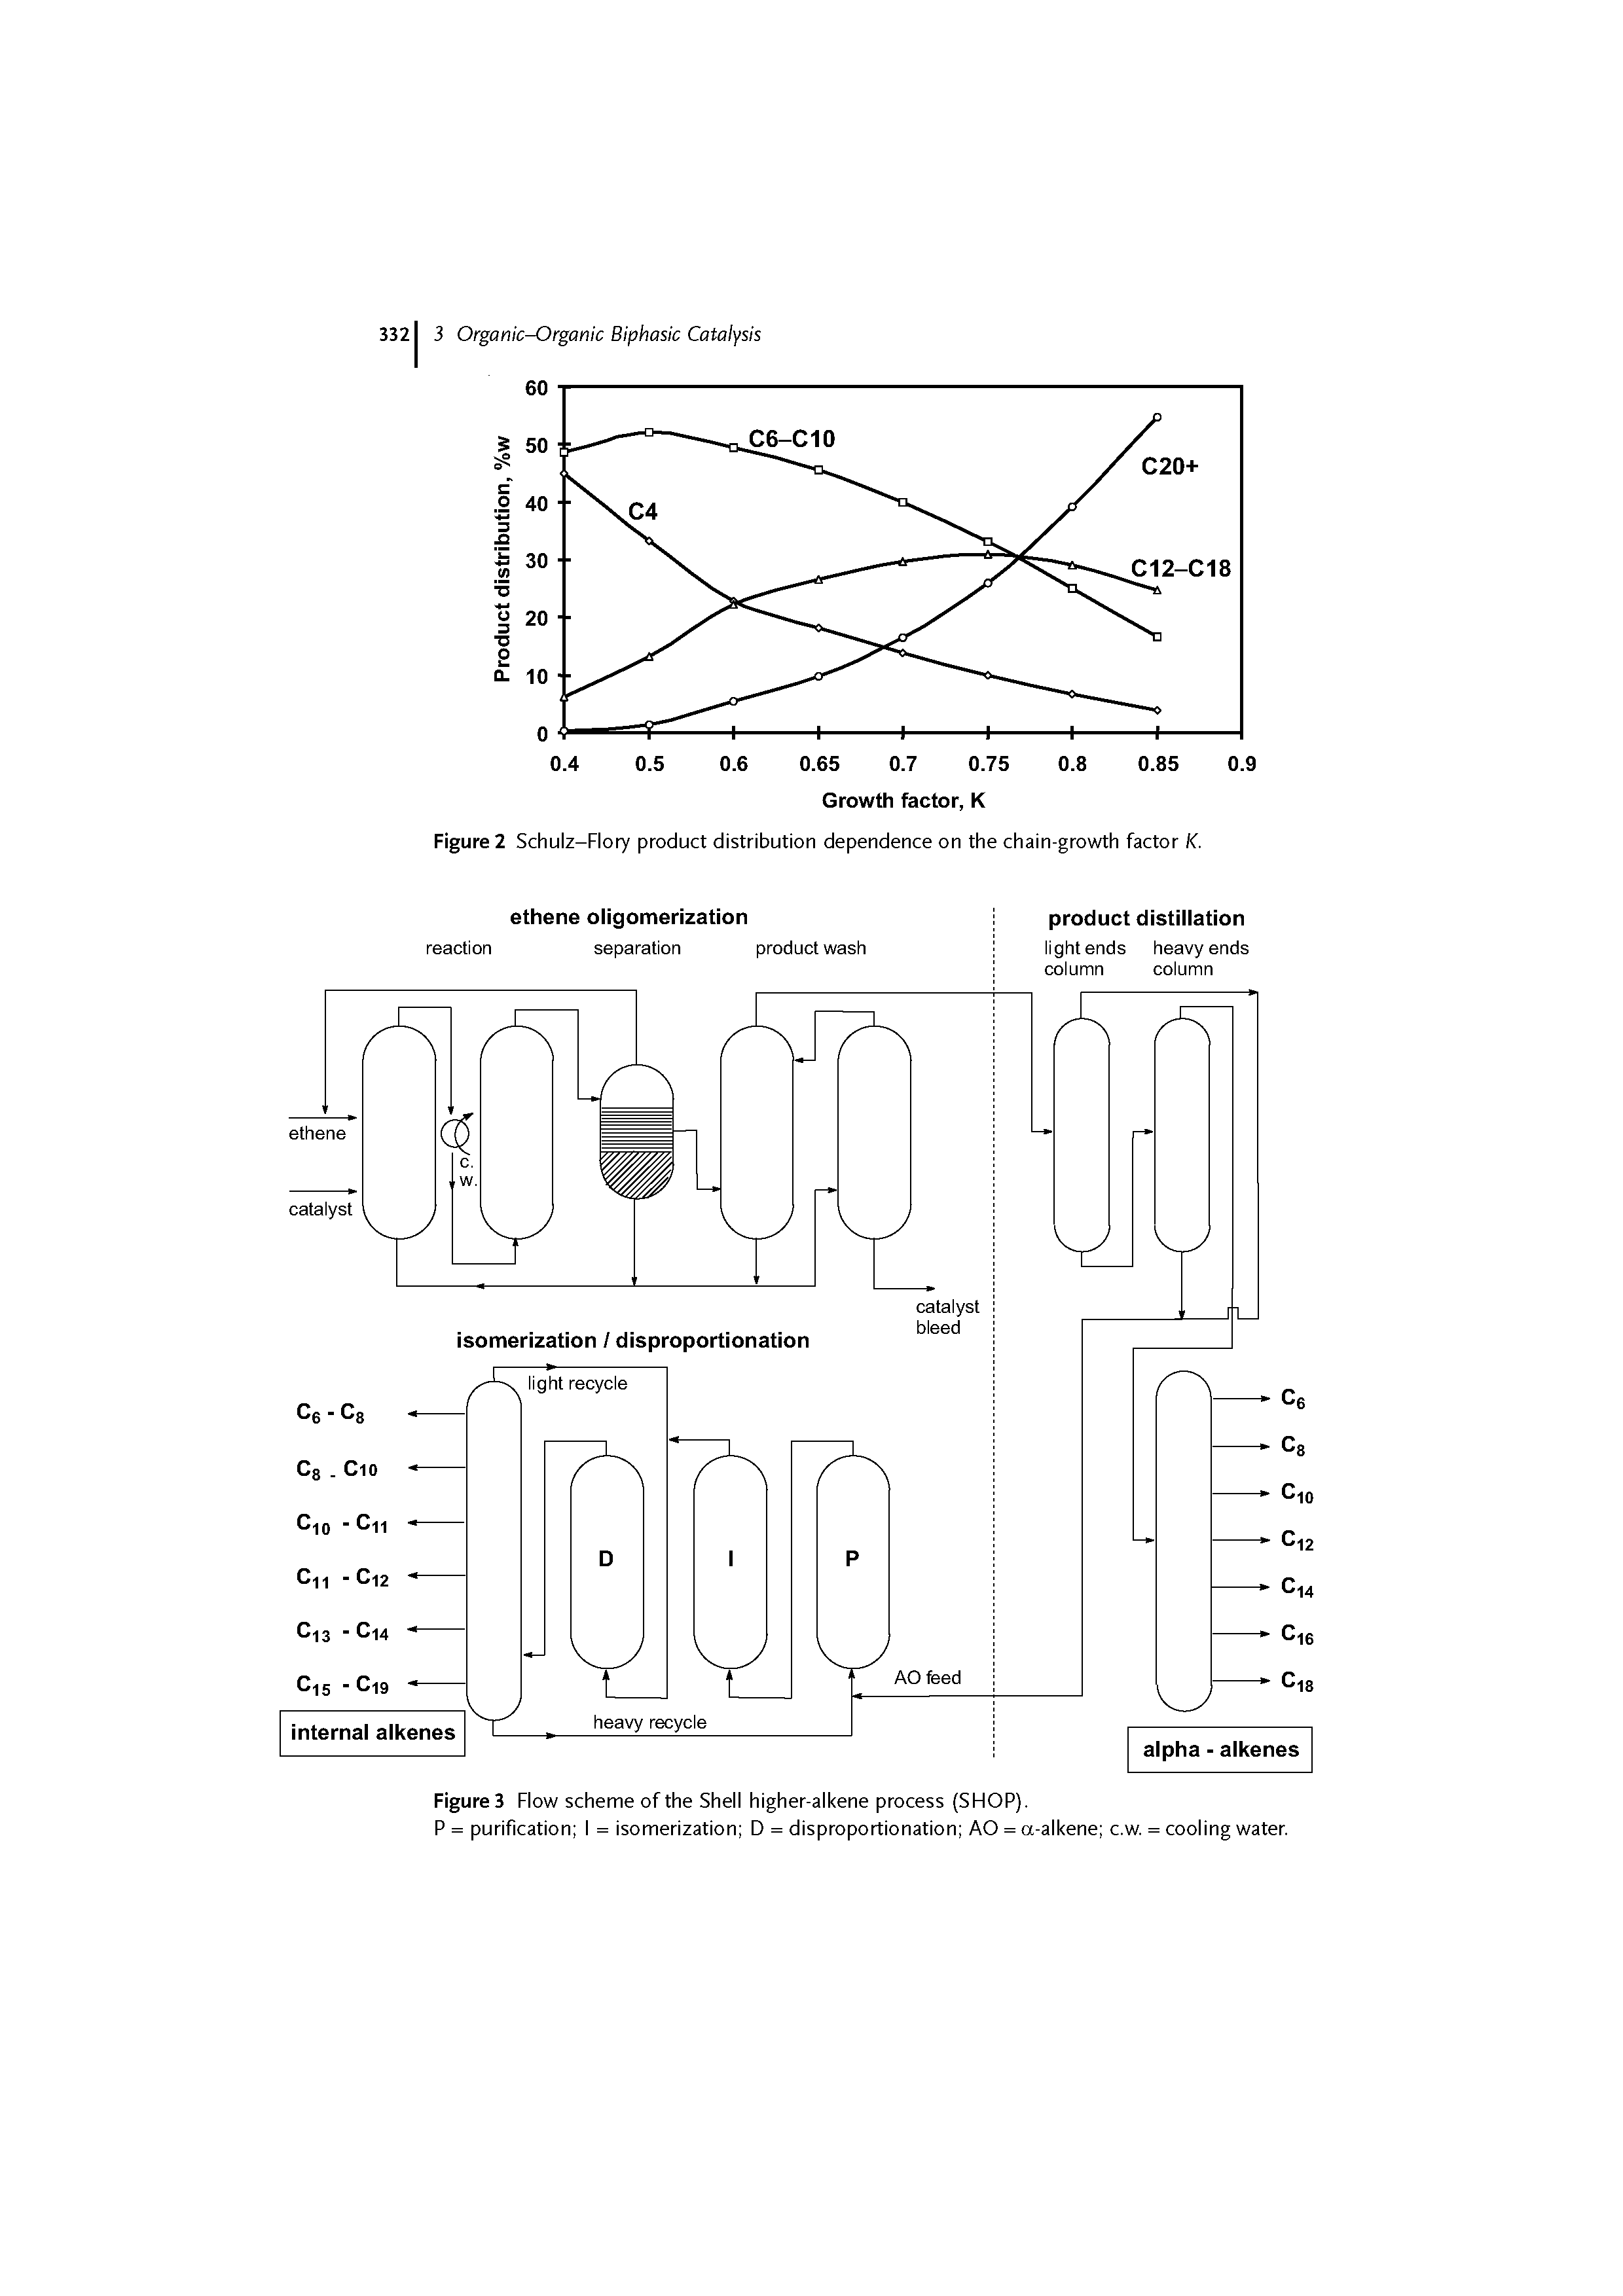 Figures Flow scheme of the Shell higher-alkene process (SHOP).